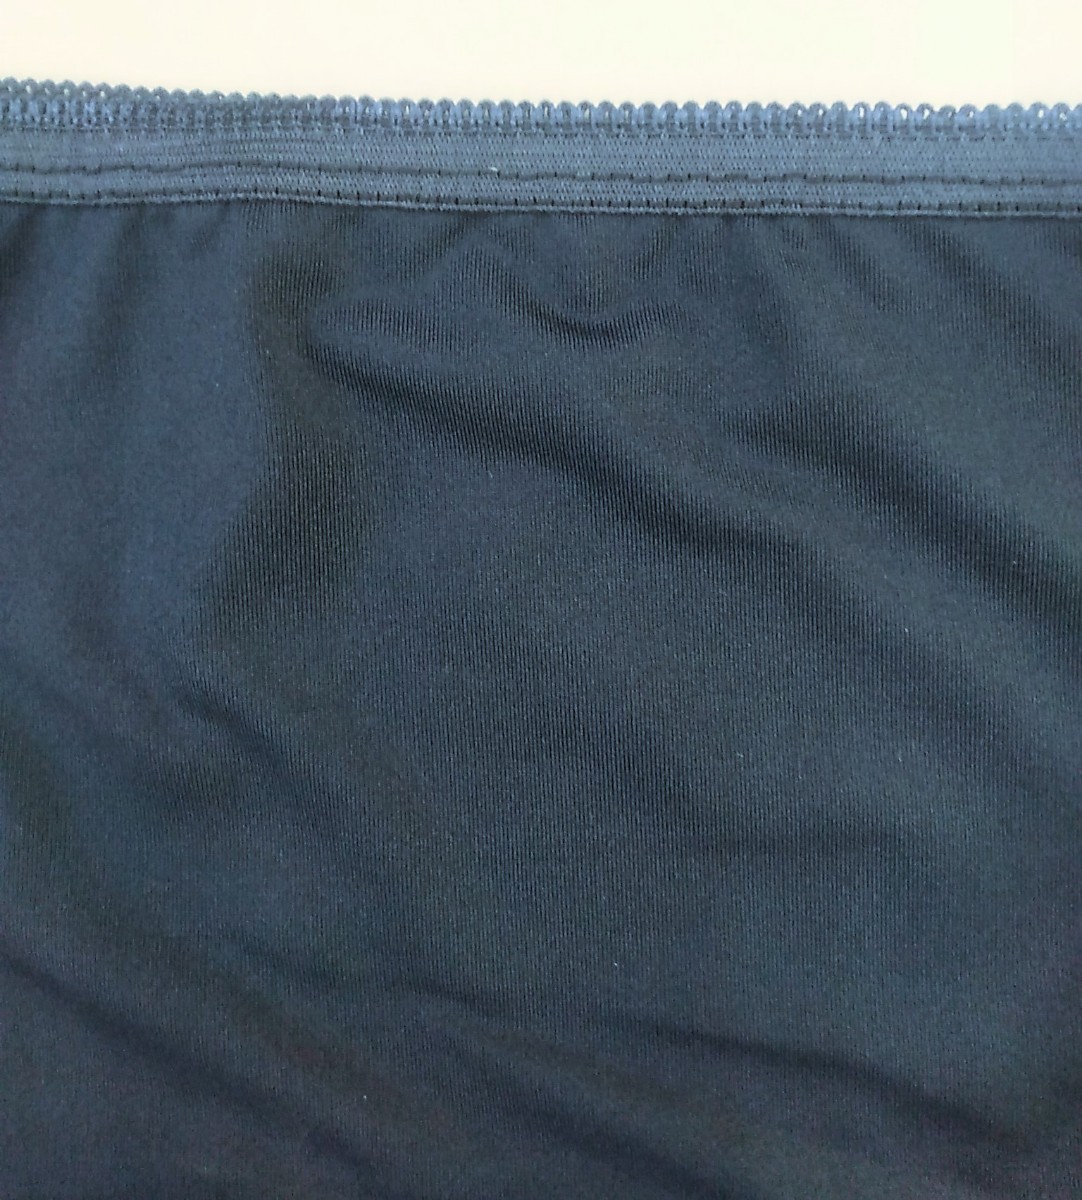 G470 новый товар бесплатная доставка шорты женский гигиенический 5L размер темно-синий темно-синий No248 выходной /4/27-5/6